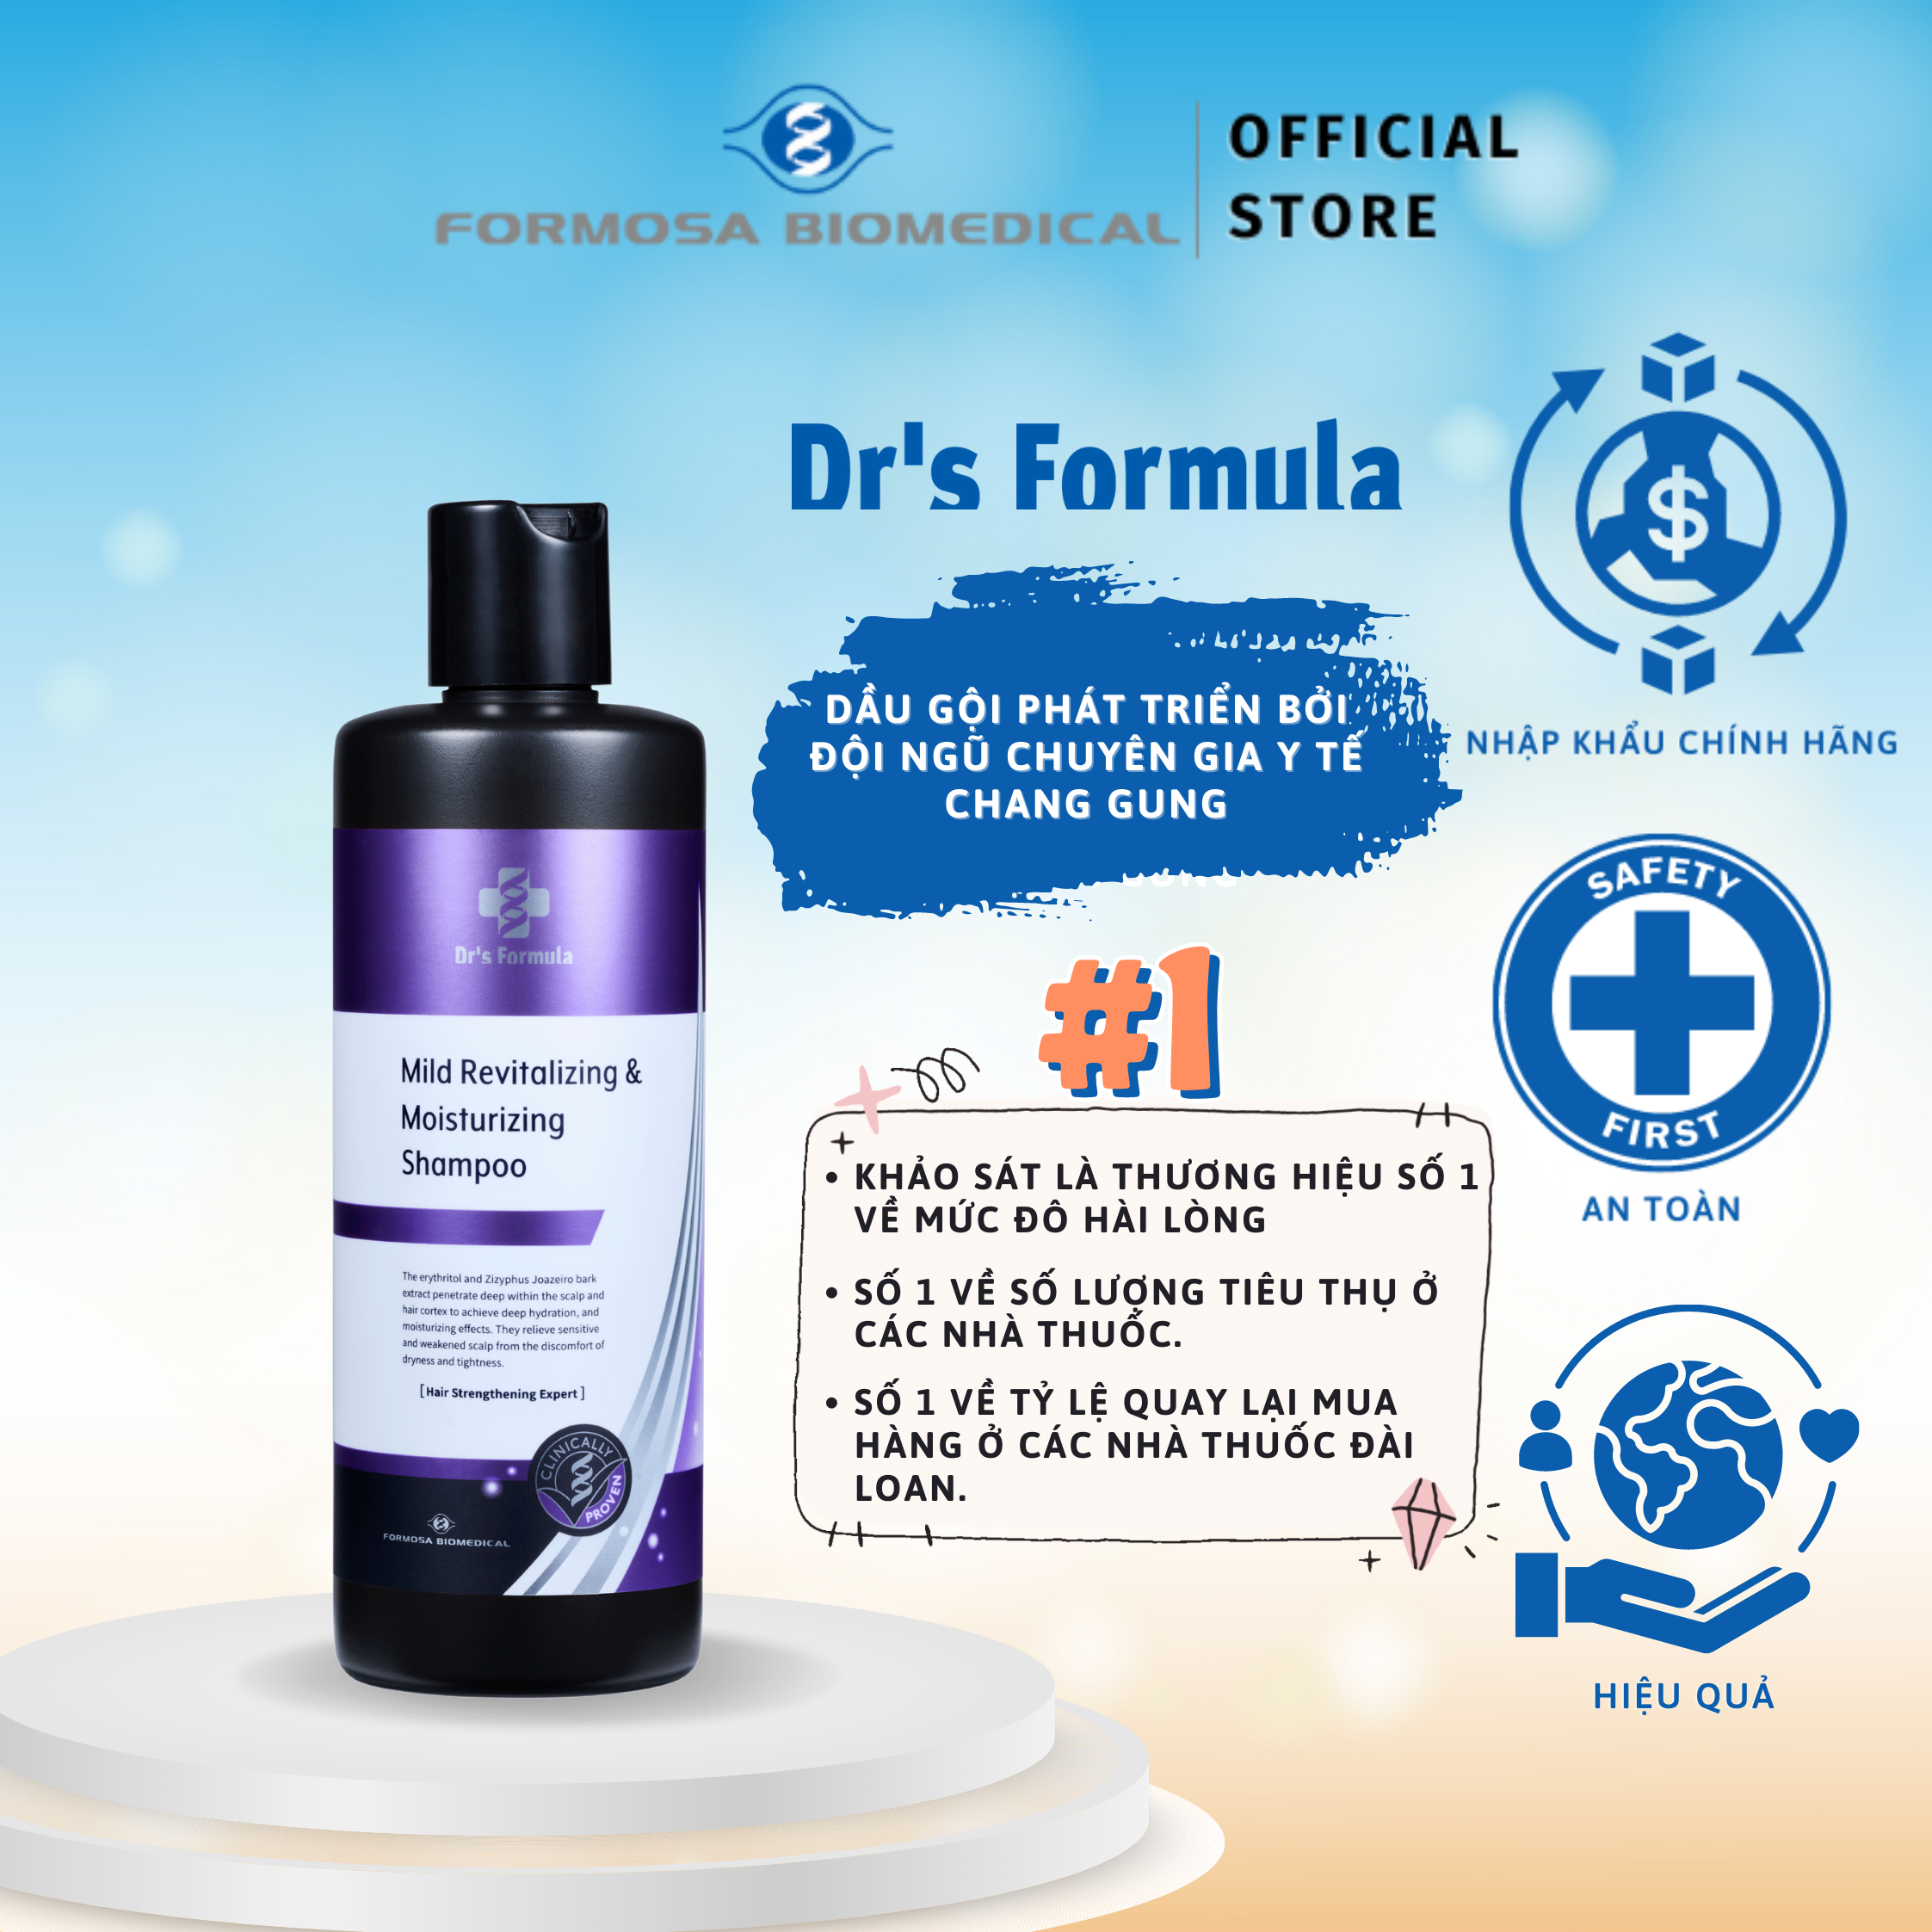 Dầu Gội Phục Hồi Và Dưỡng Ẩm Dr's Formula Mild Revitalizing &amp; Moisturizing Shampoo